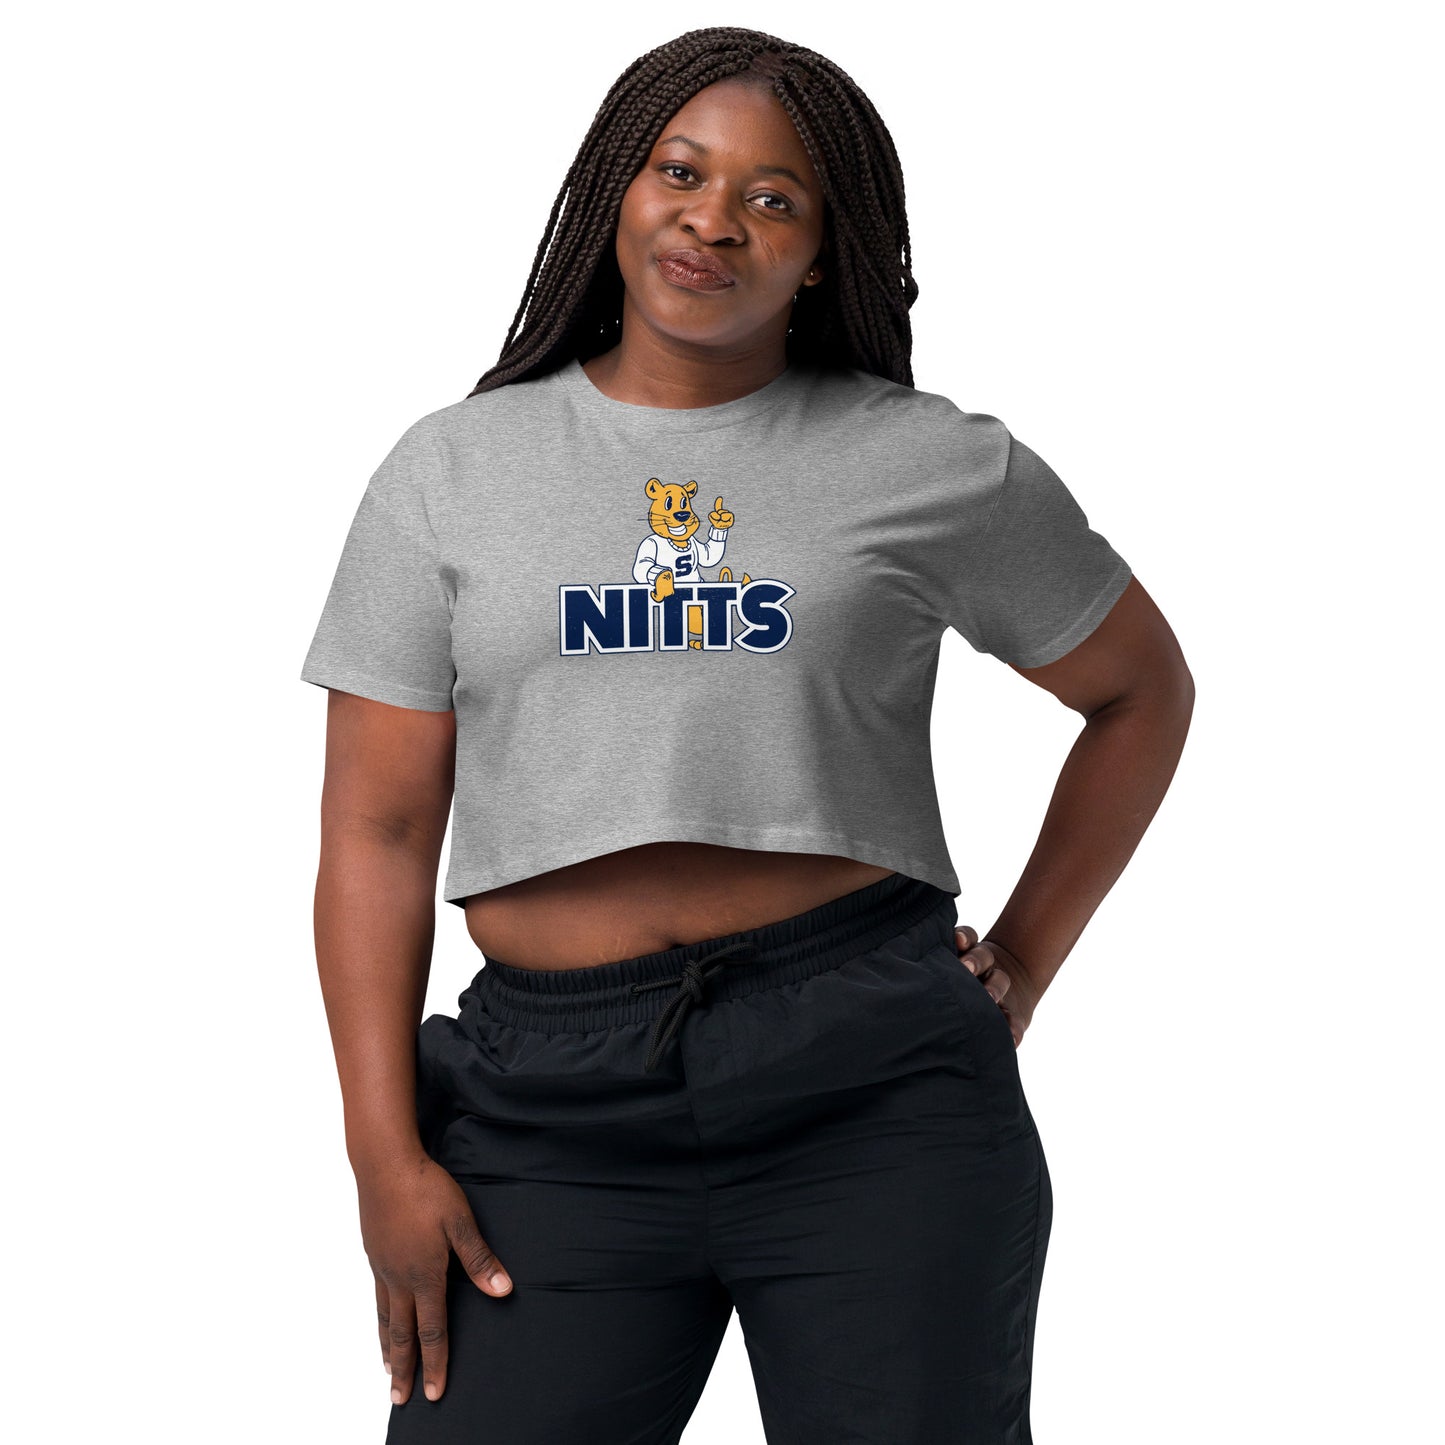 Nitts Mascot women’s crop top